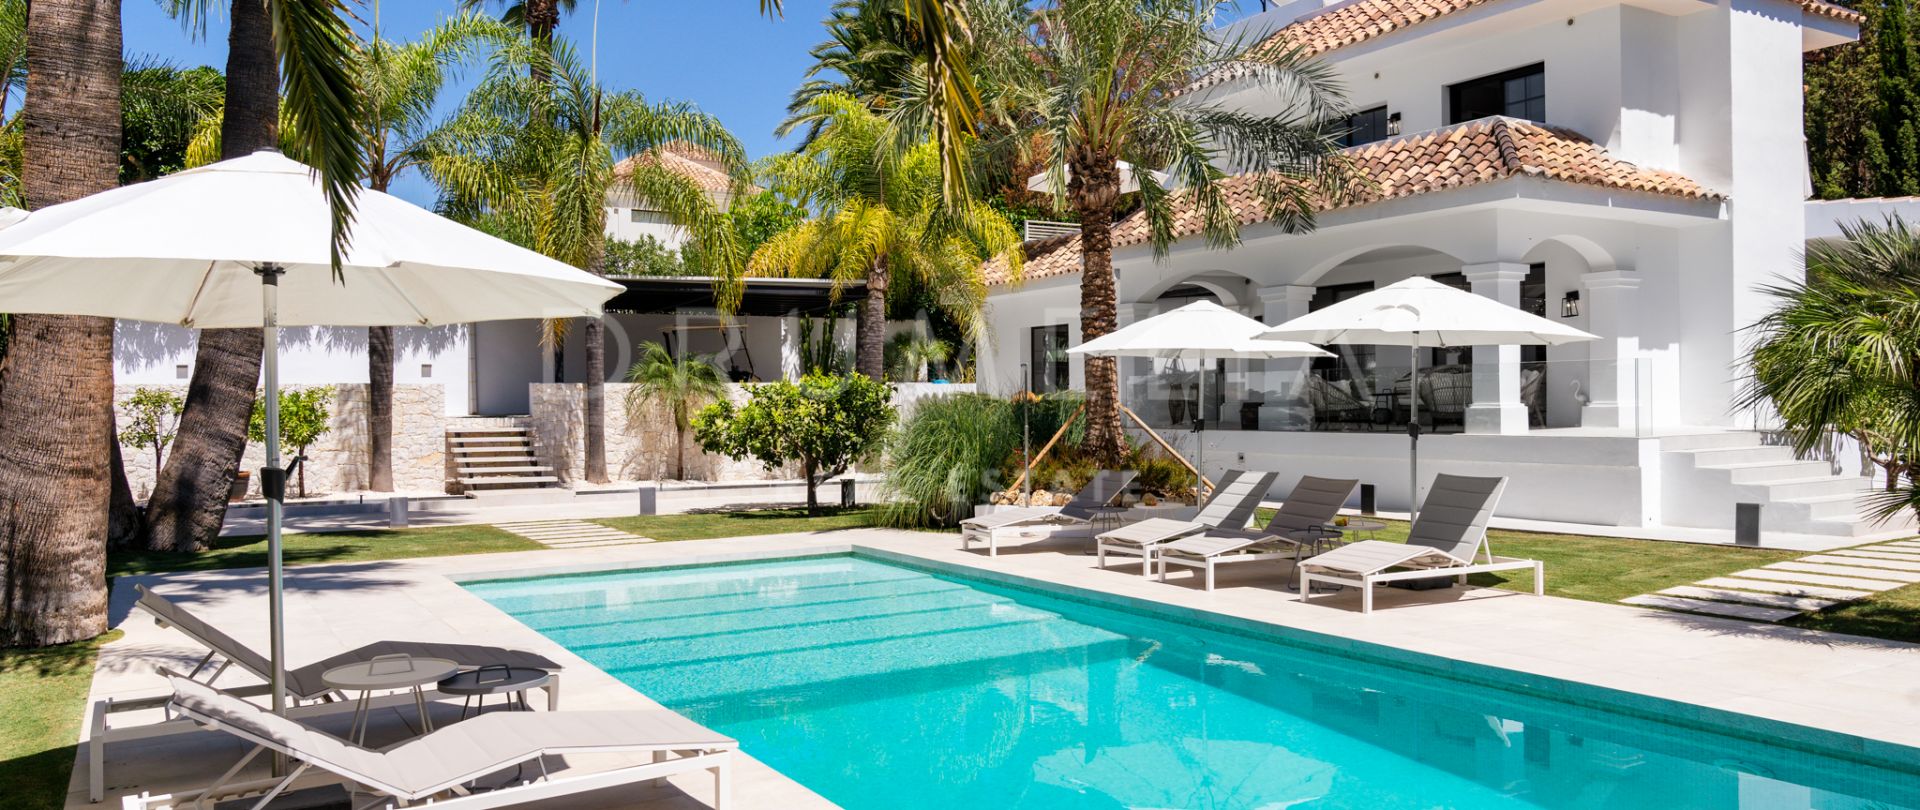 Villa de luxe magnifiquement rénovée à proximité du club de golf Los Naranjos dans la Nouvelle Andalousie, Marbella.